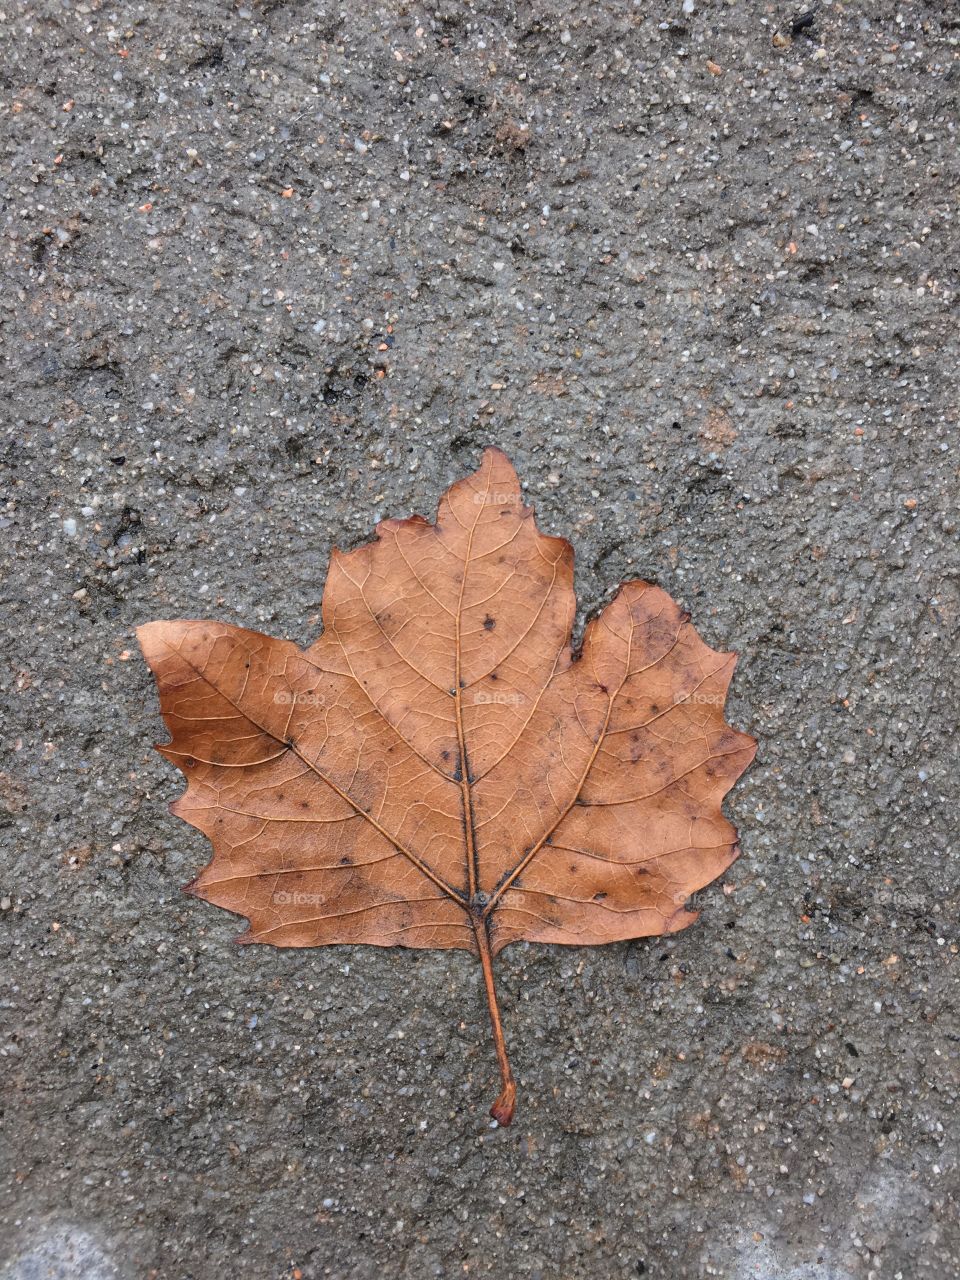 Leaf on wet ground 